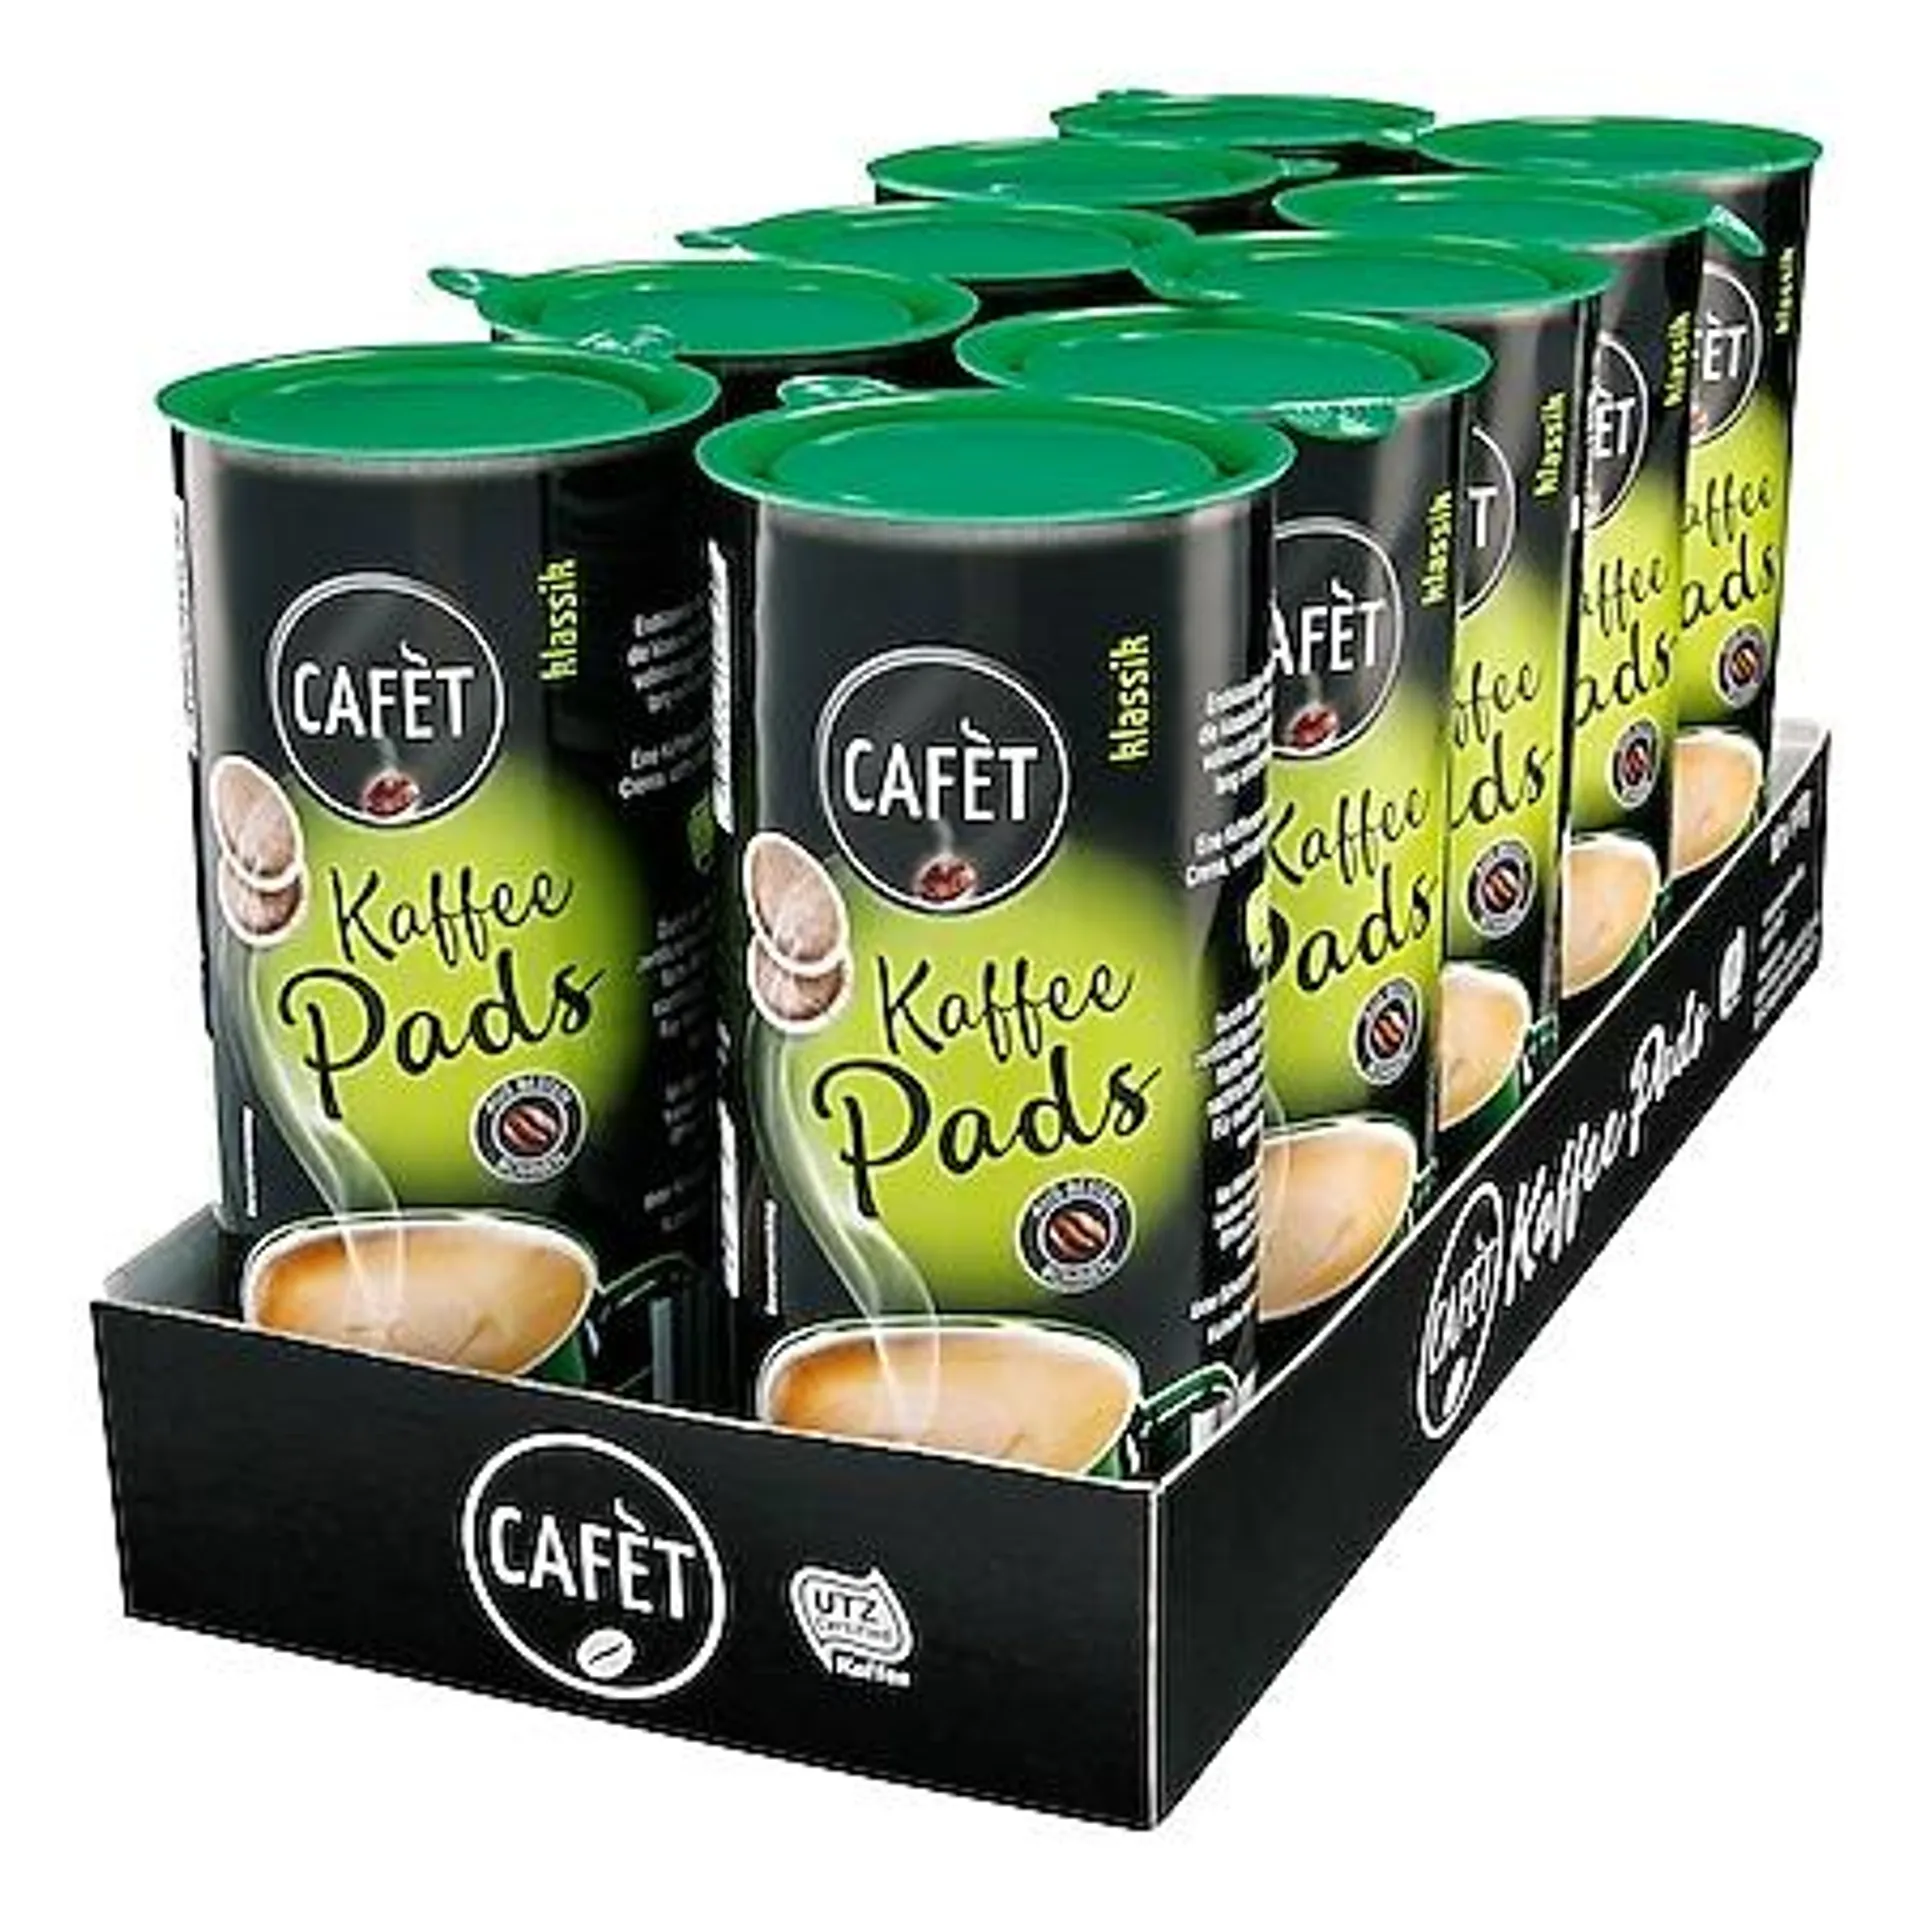 Cafet Klassik Pads 144 g, 10er Pack